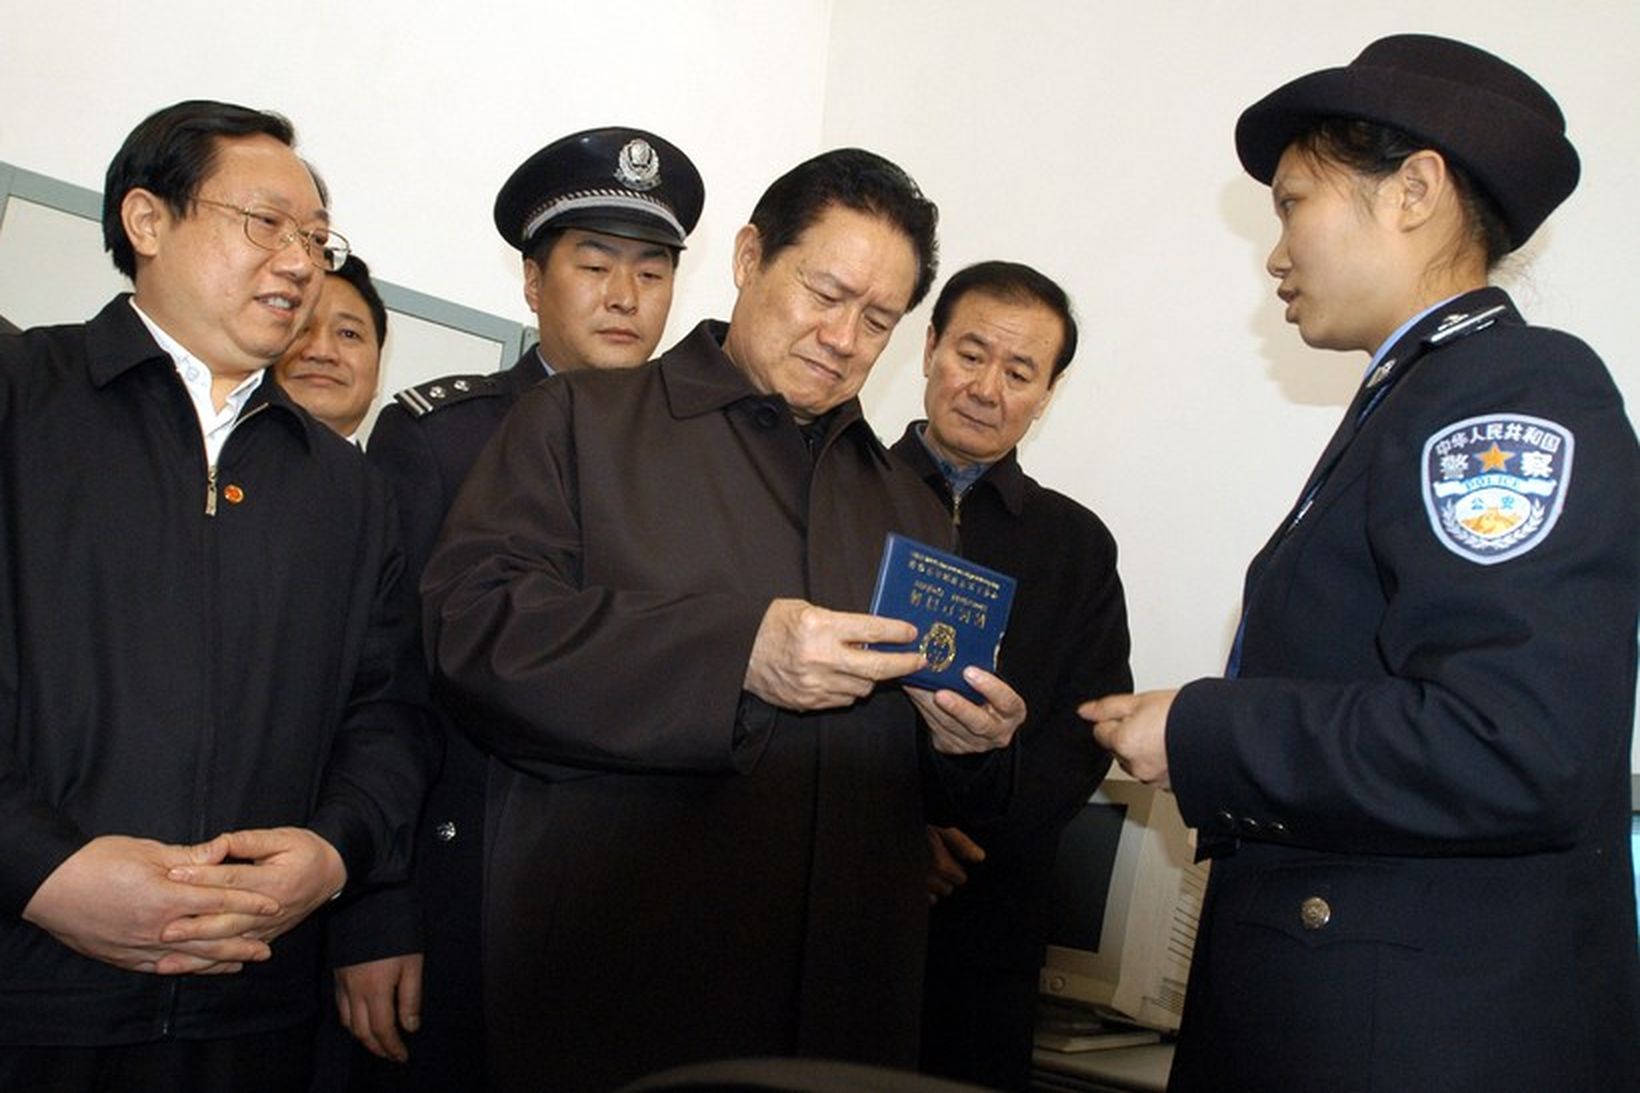 Zhou Yongkang ásamt kínverskum lögreglumönnum - Zhou sætir rannsókn vegna …